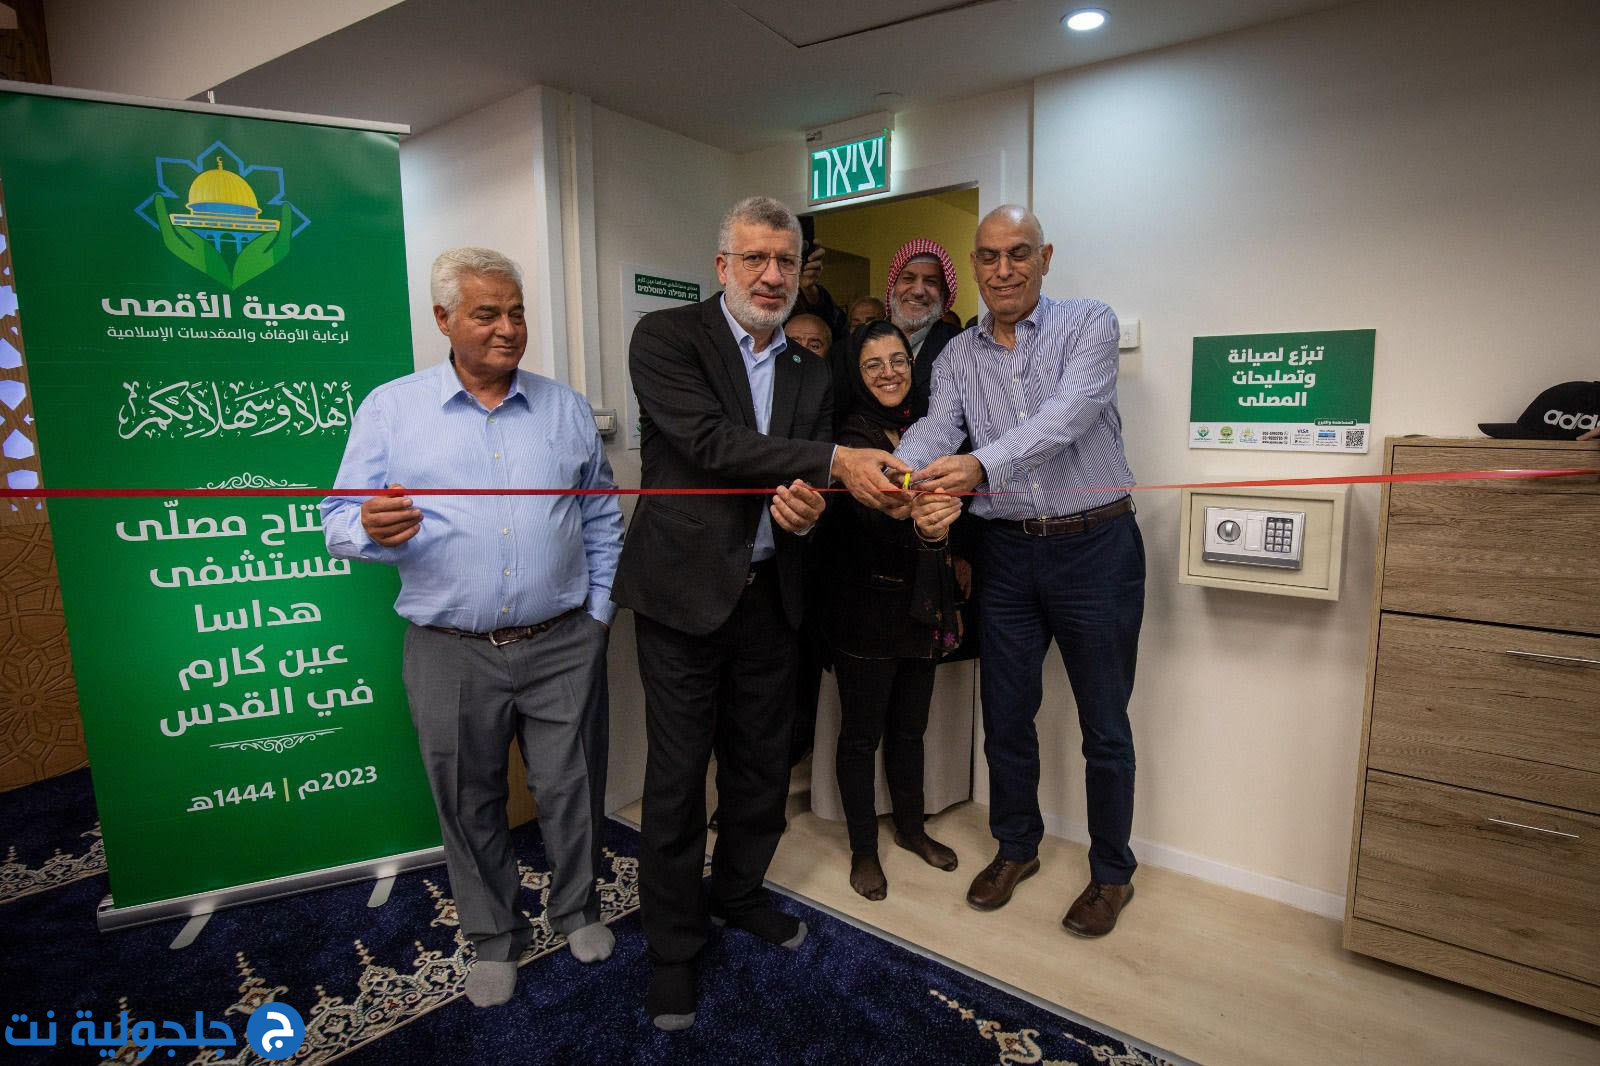 جمعية الأقصى- الحركة الإسلامية تفتتح مصلى في مستشفى هداسا عين كارم في القدس